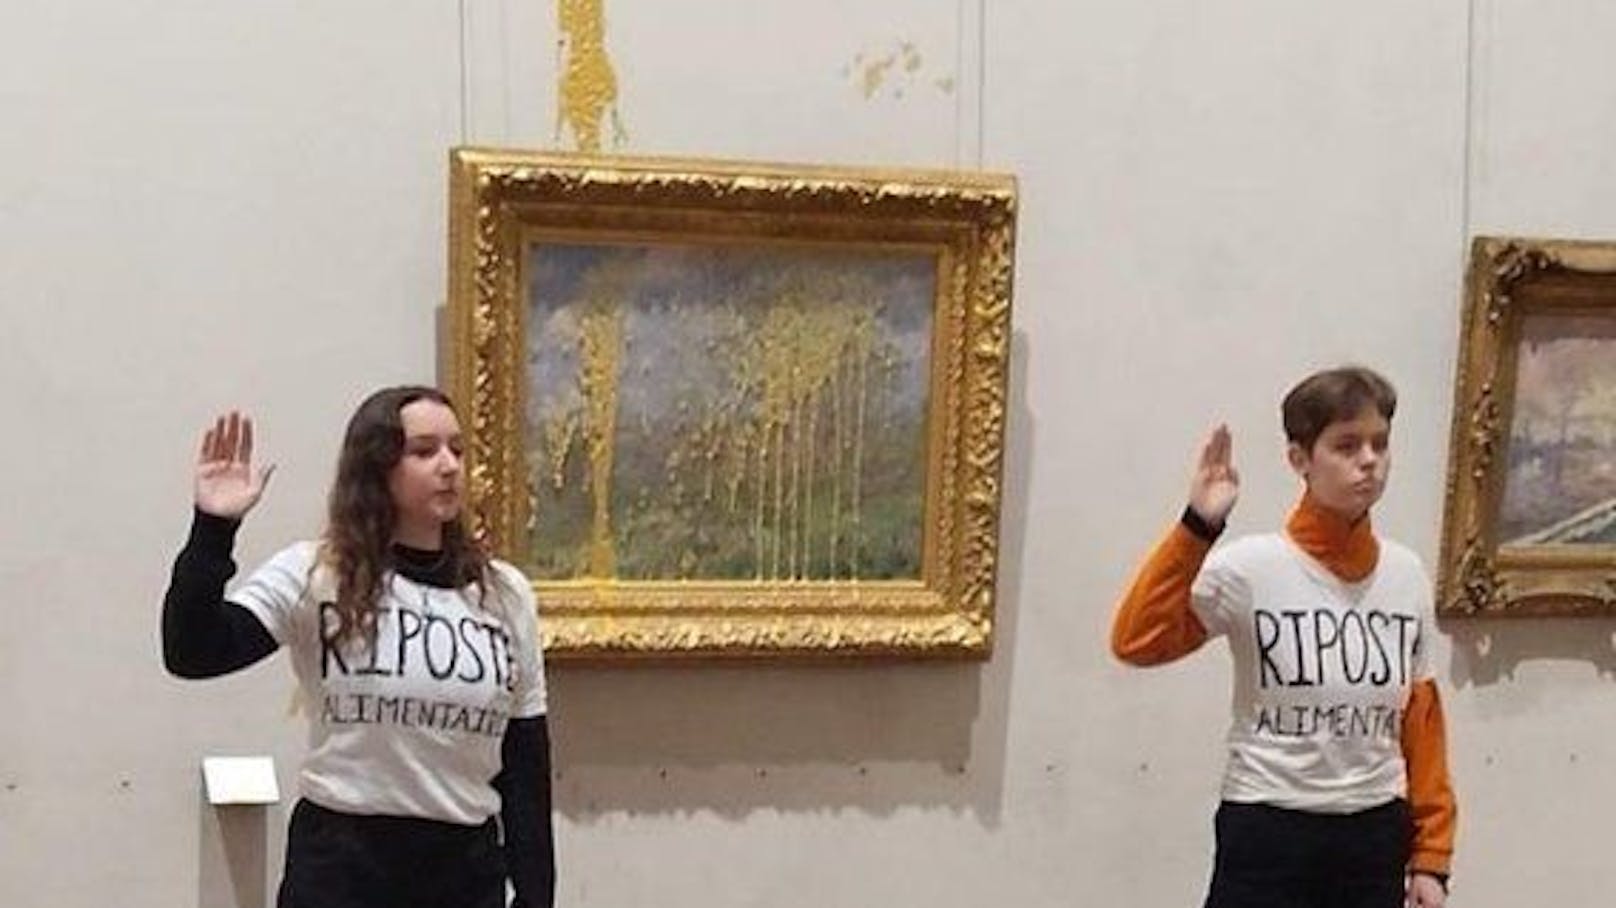 Klimaaktivisten bewerfen Monet-Kunstwerk mit Suppe